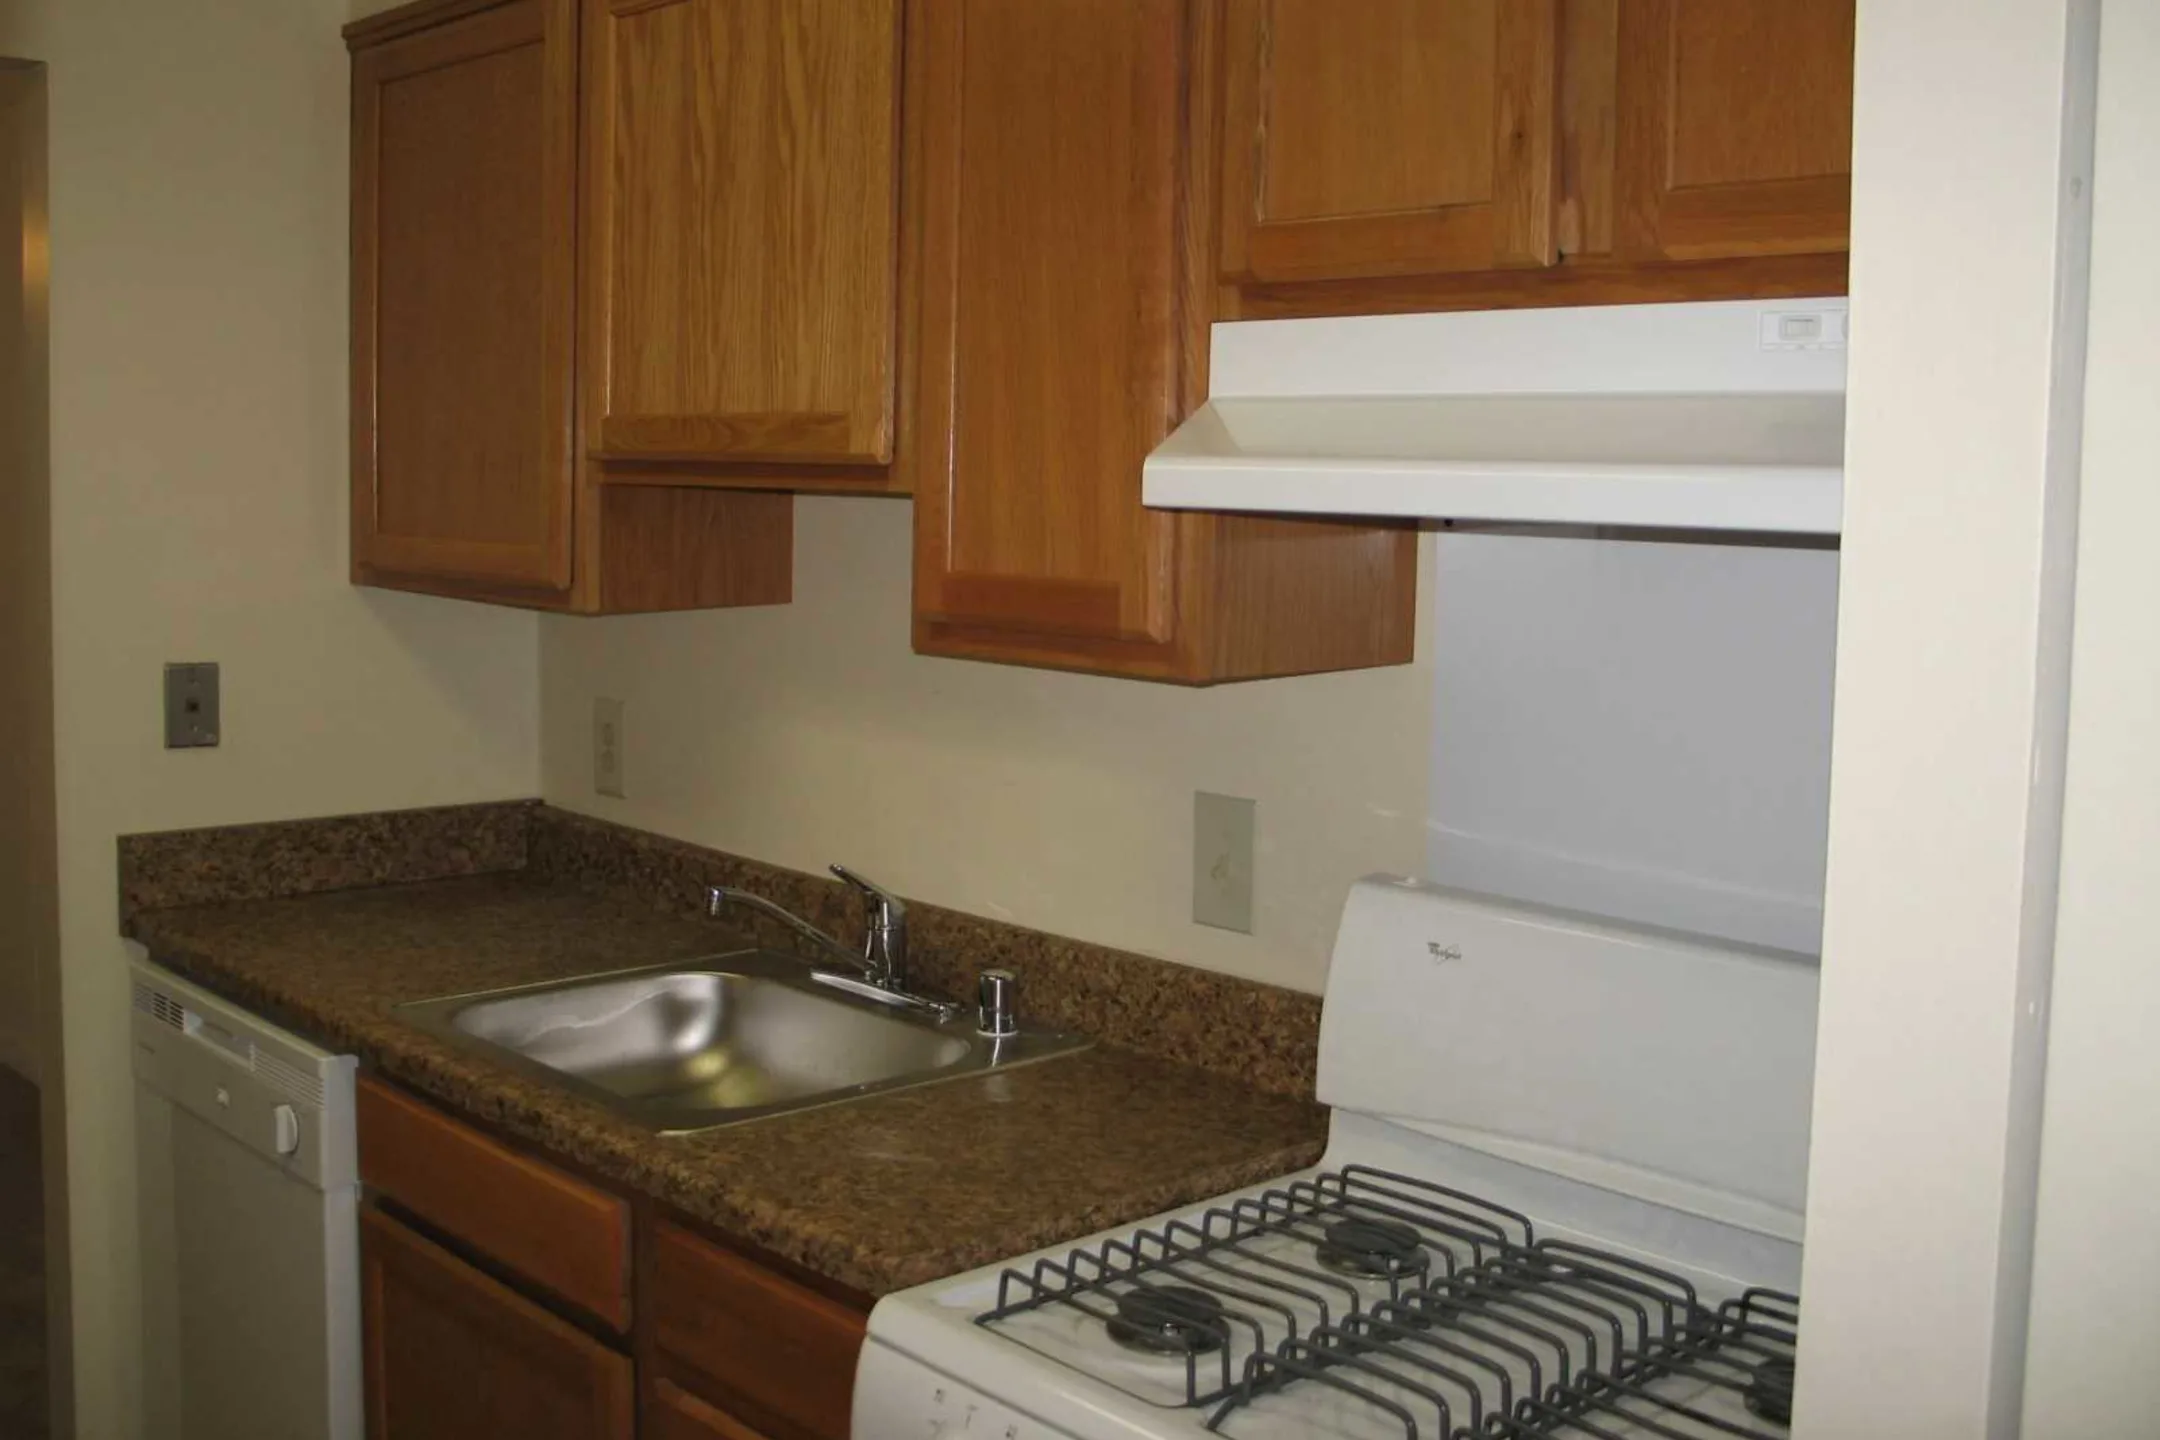 Kitchen - Woodcrest Apartments - Glen Burnie, MD